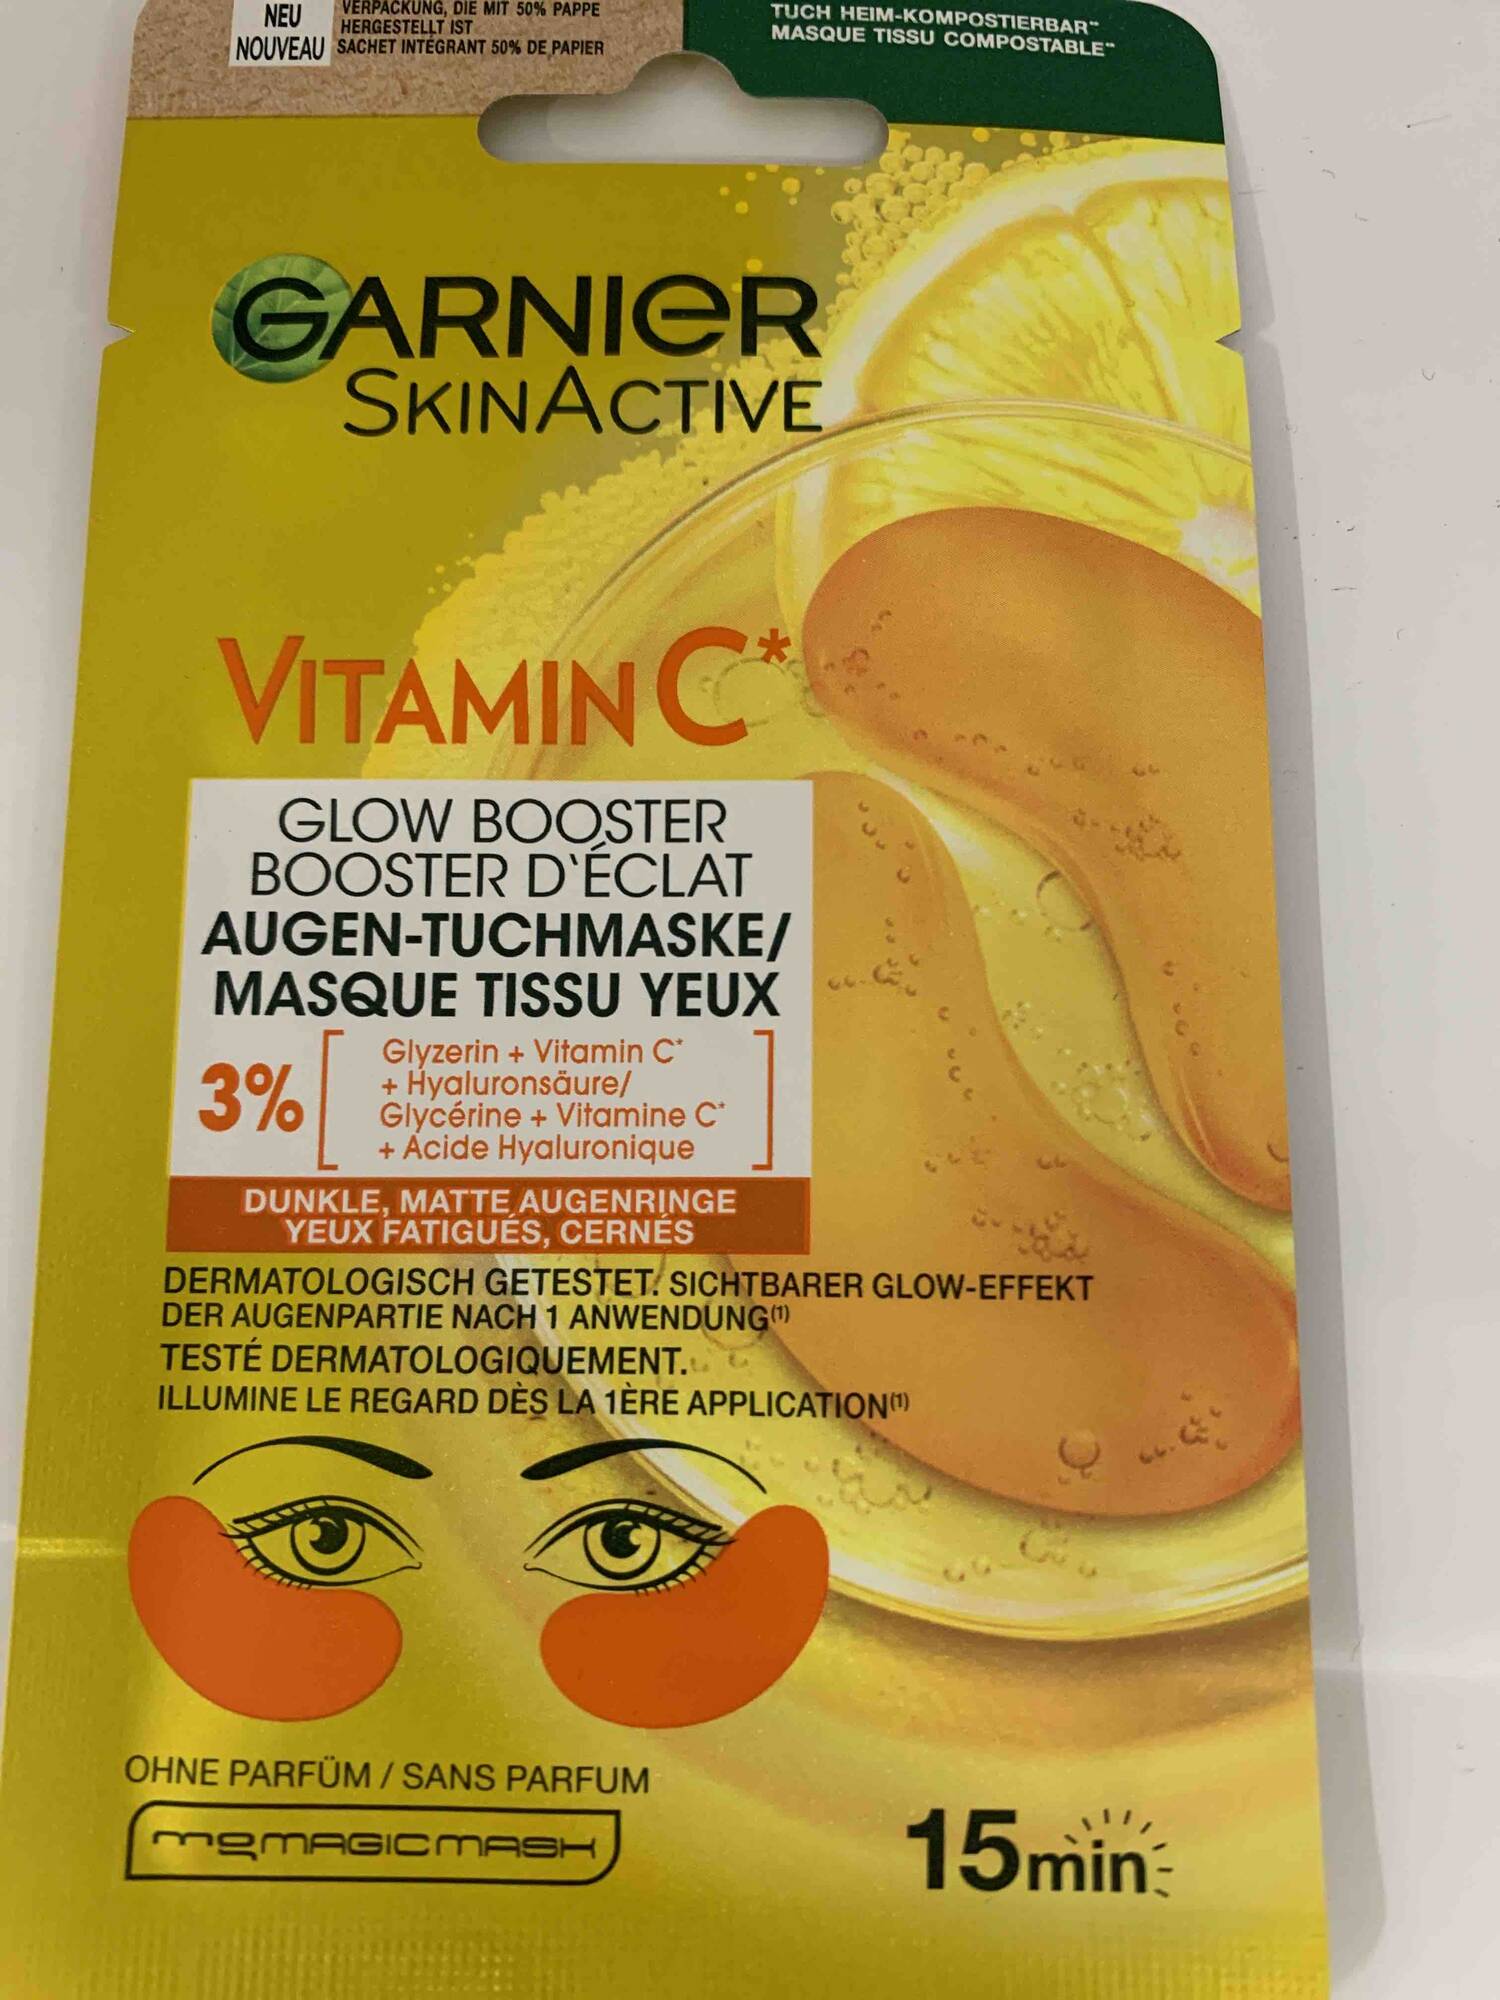 GARNIER - Skinactive vitamin C - Masque tissu yeux